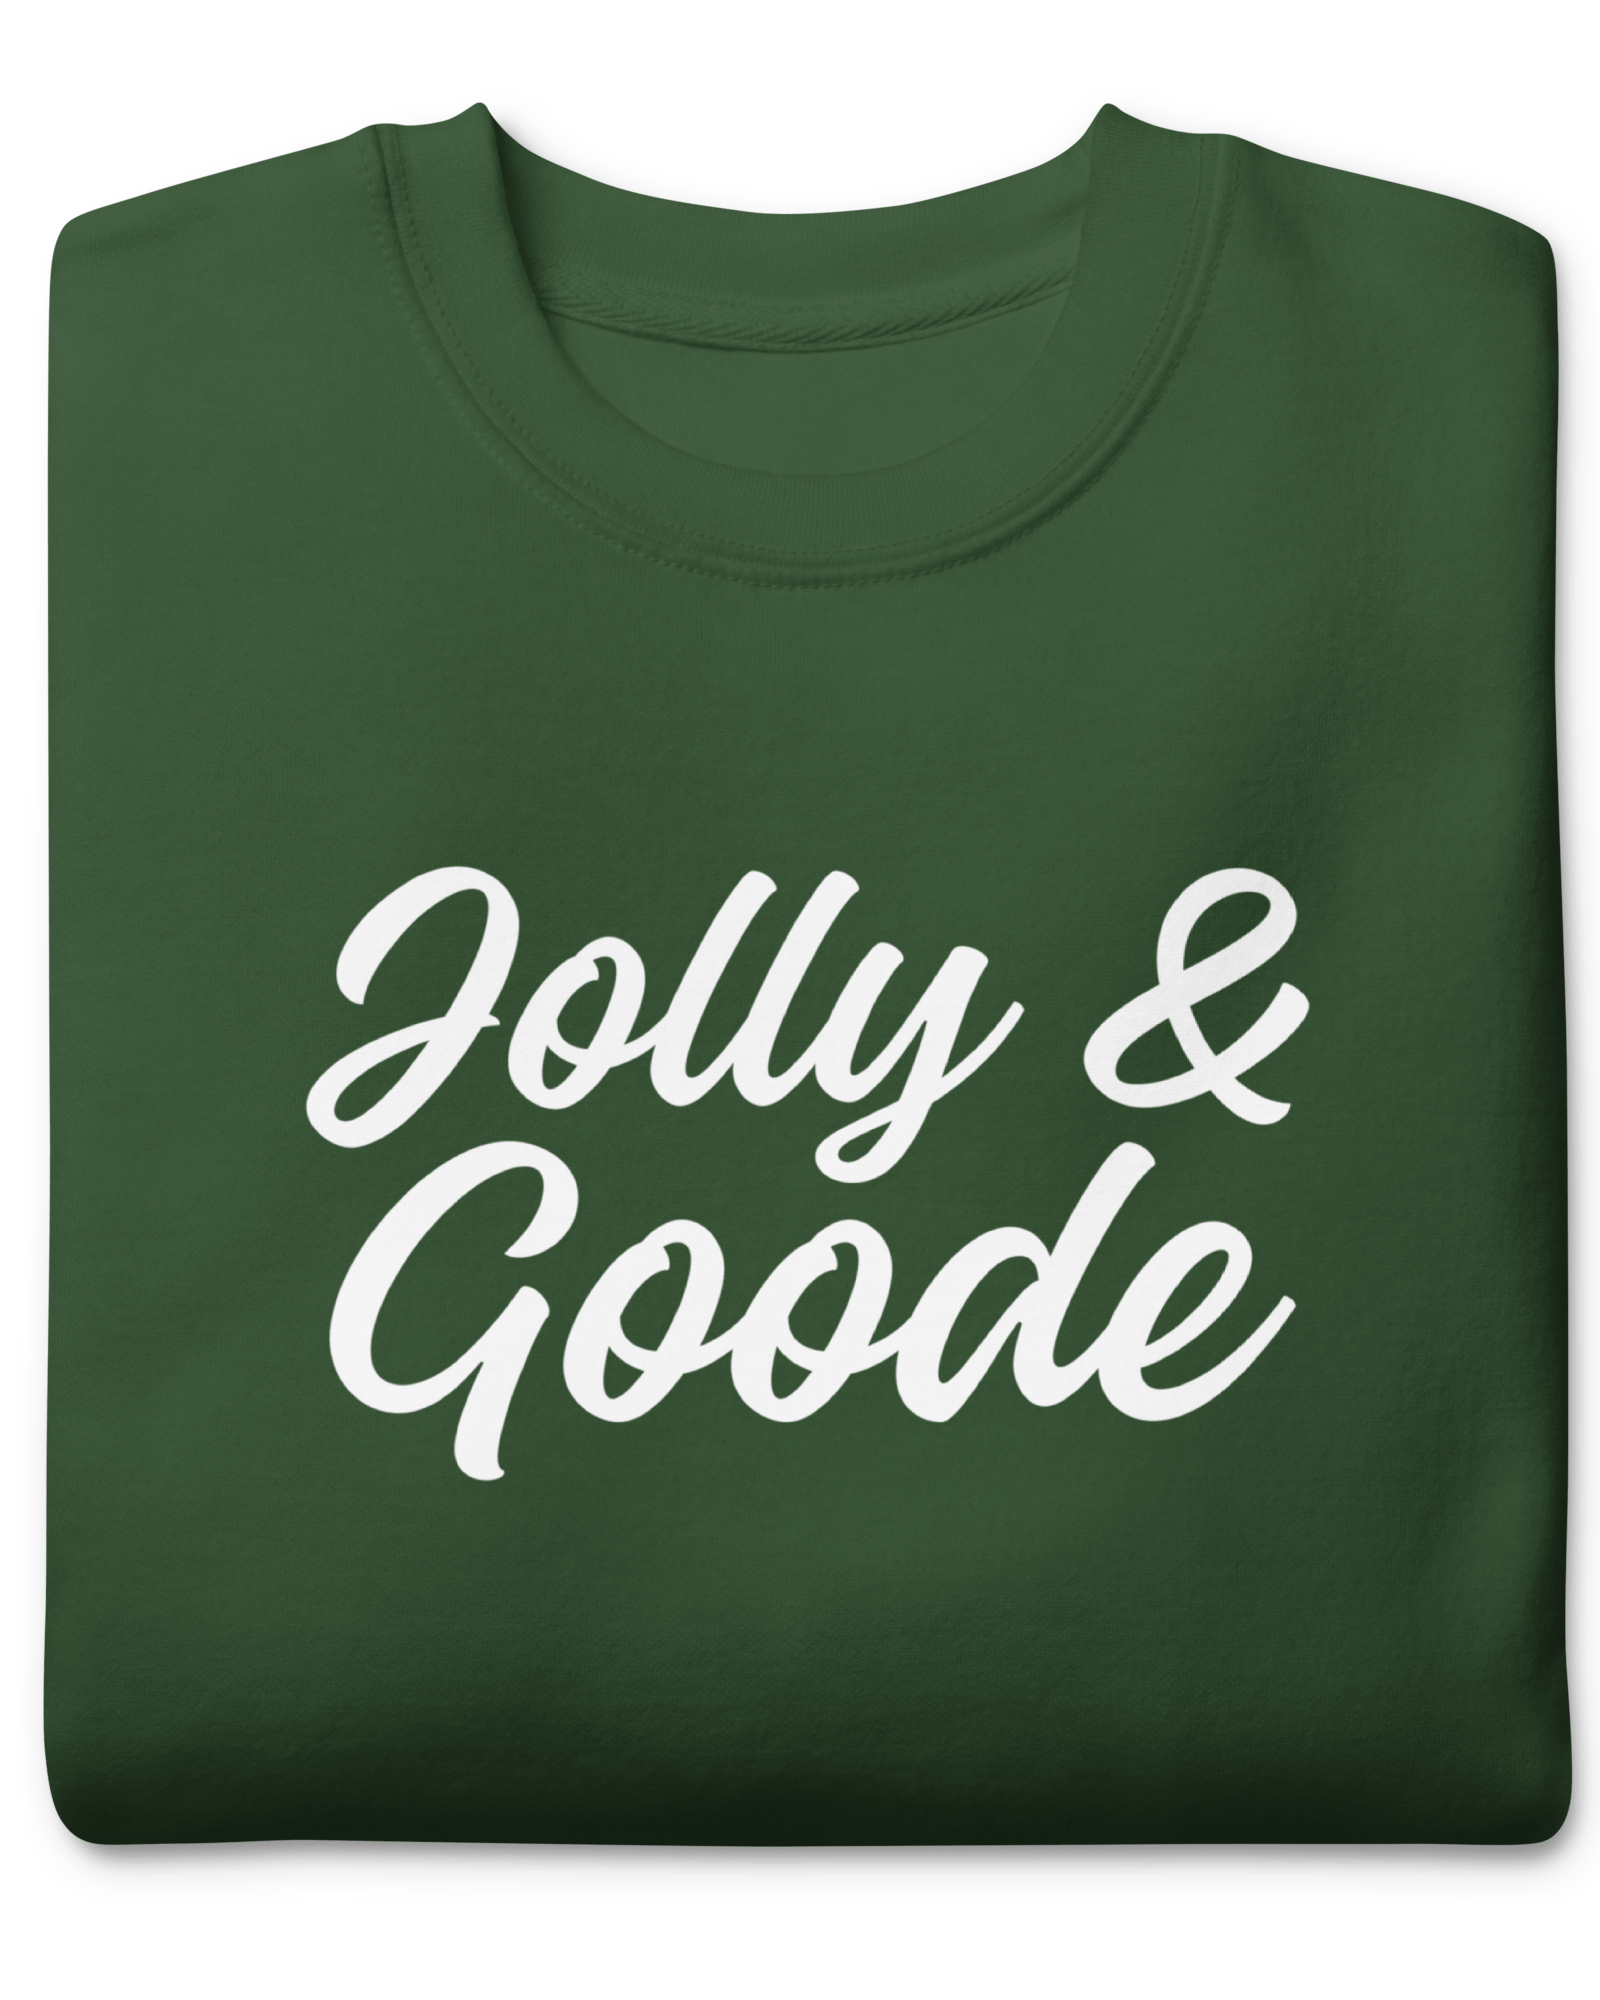 Jolly & Goode Sweatshirt Sweatshirt Jolly & Goode